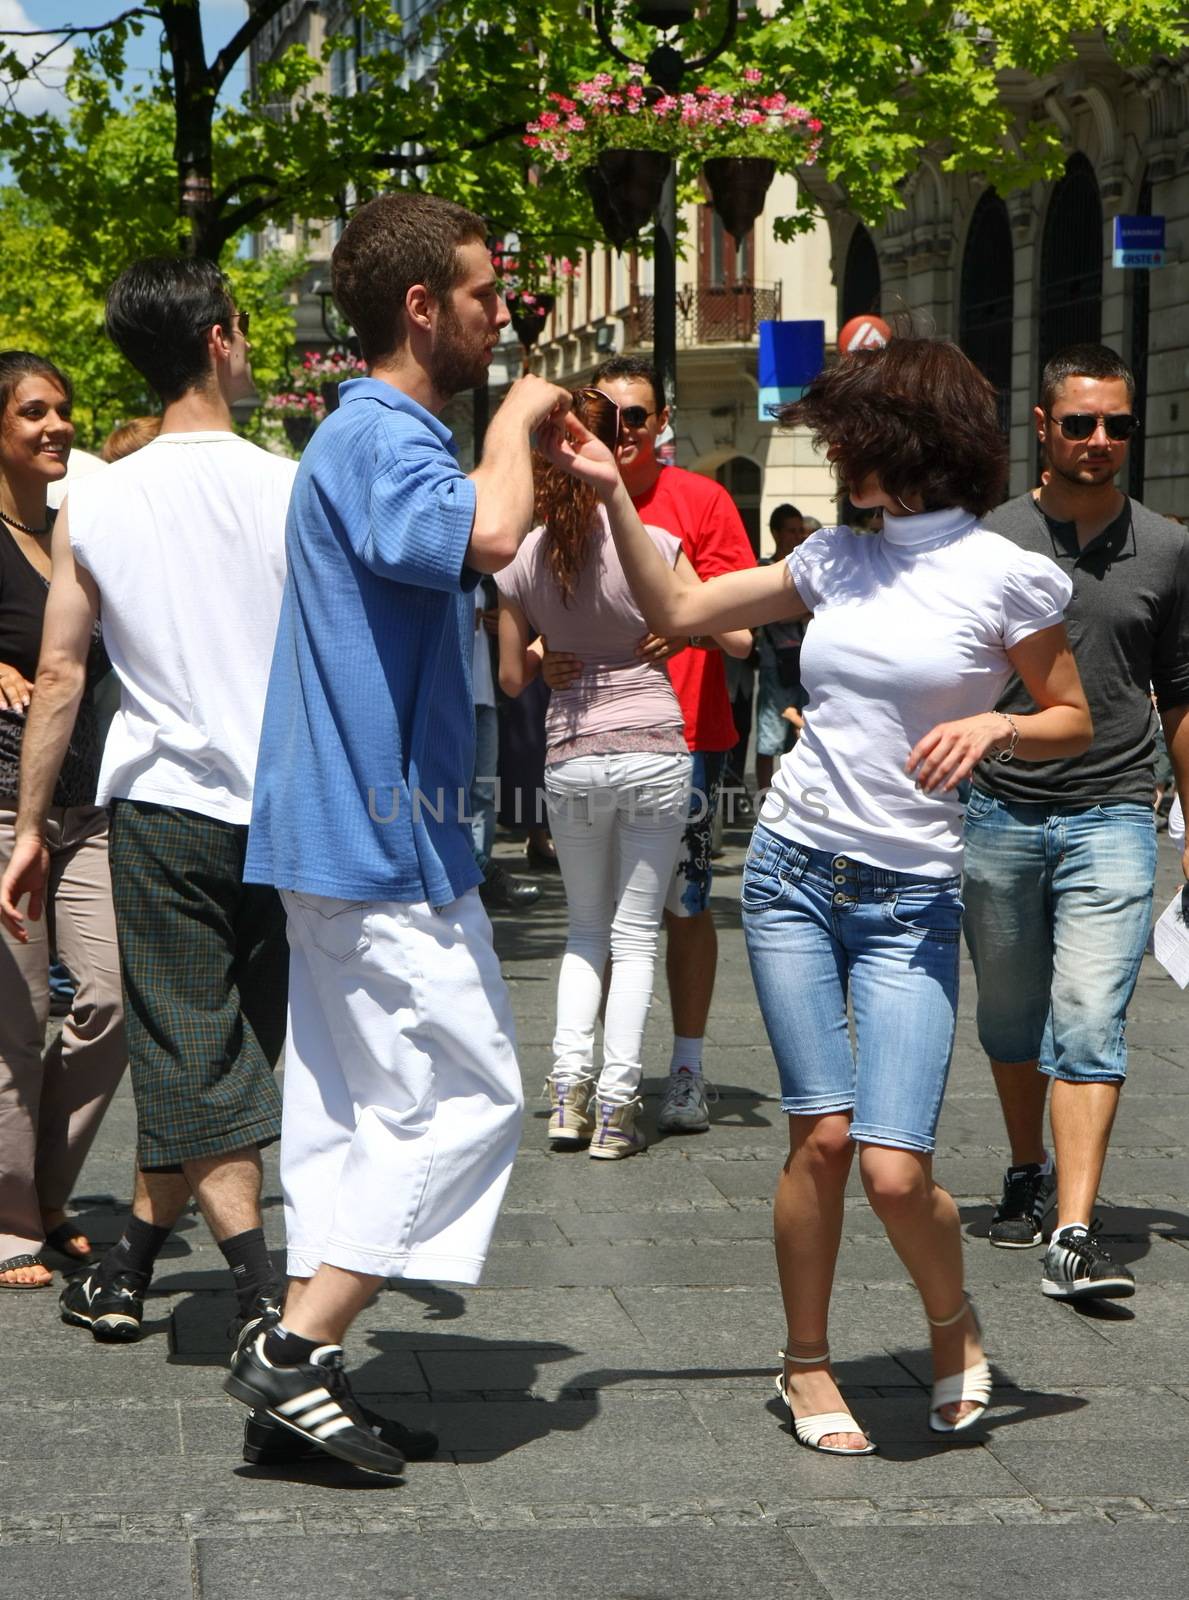 Dance in Belgrade by tdjoric